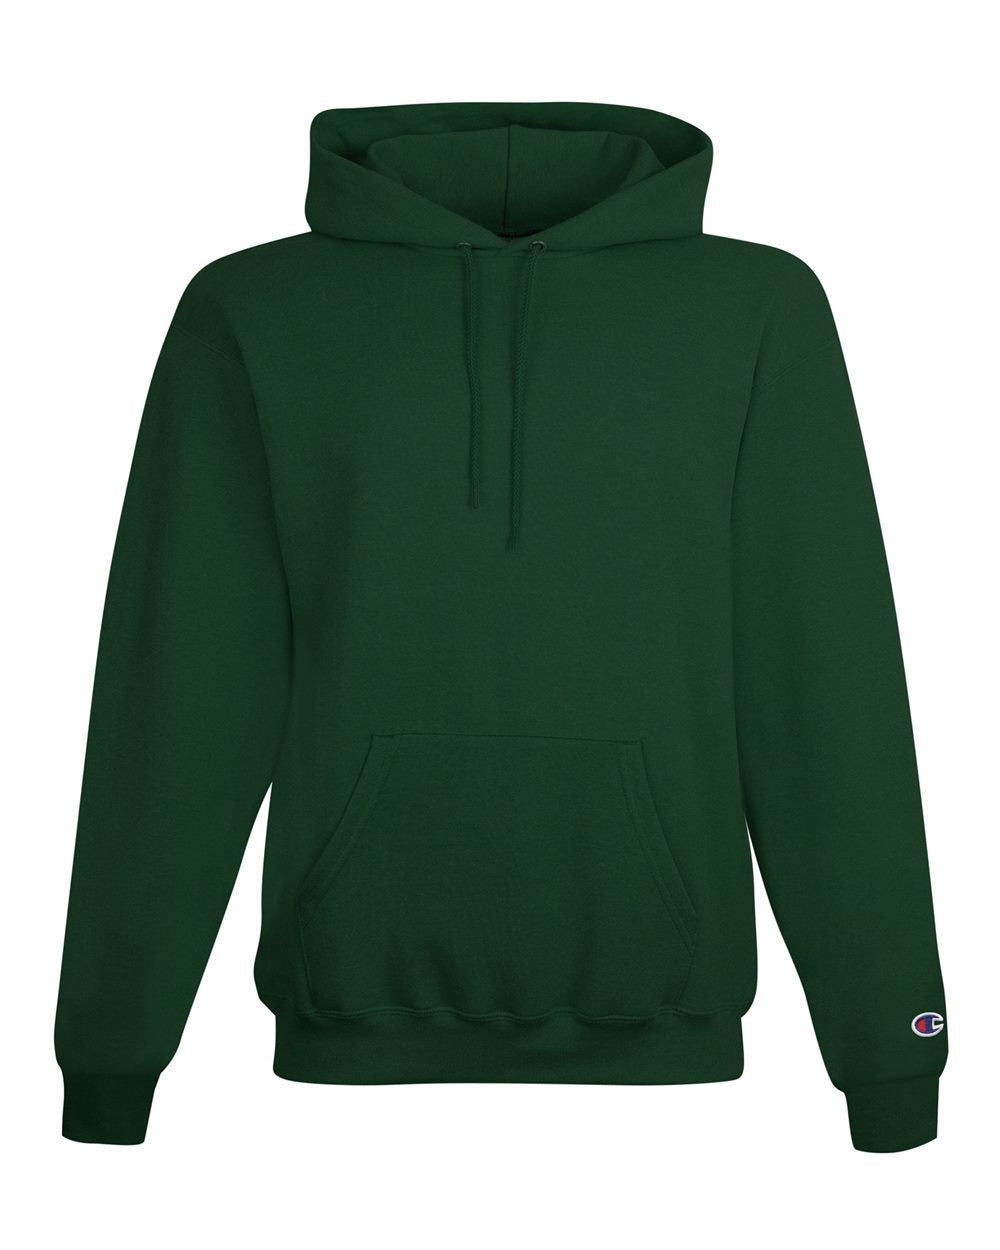 champion powerblend hooded sweatshirt dark green heather